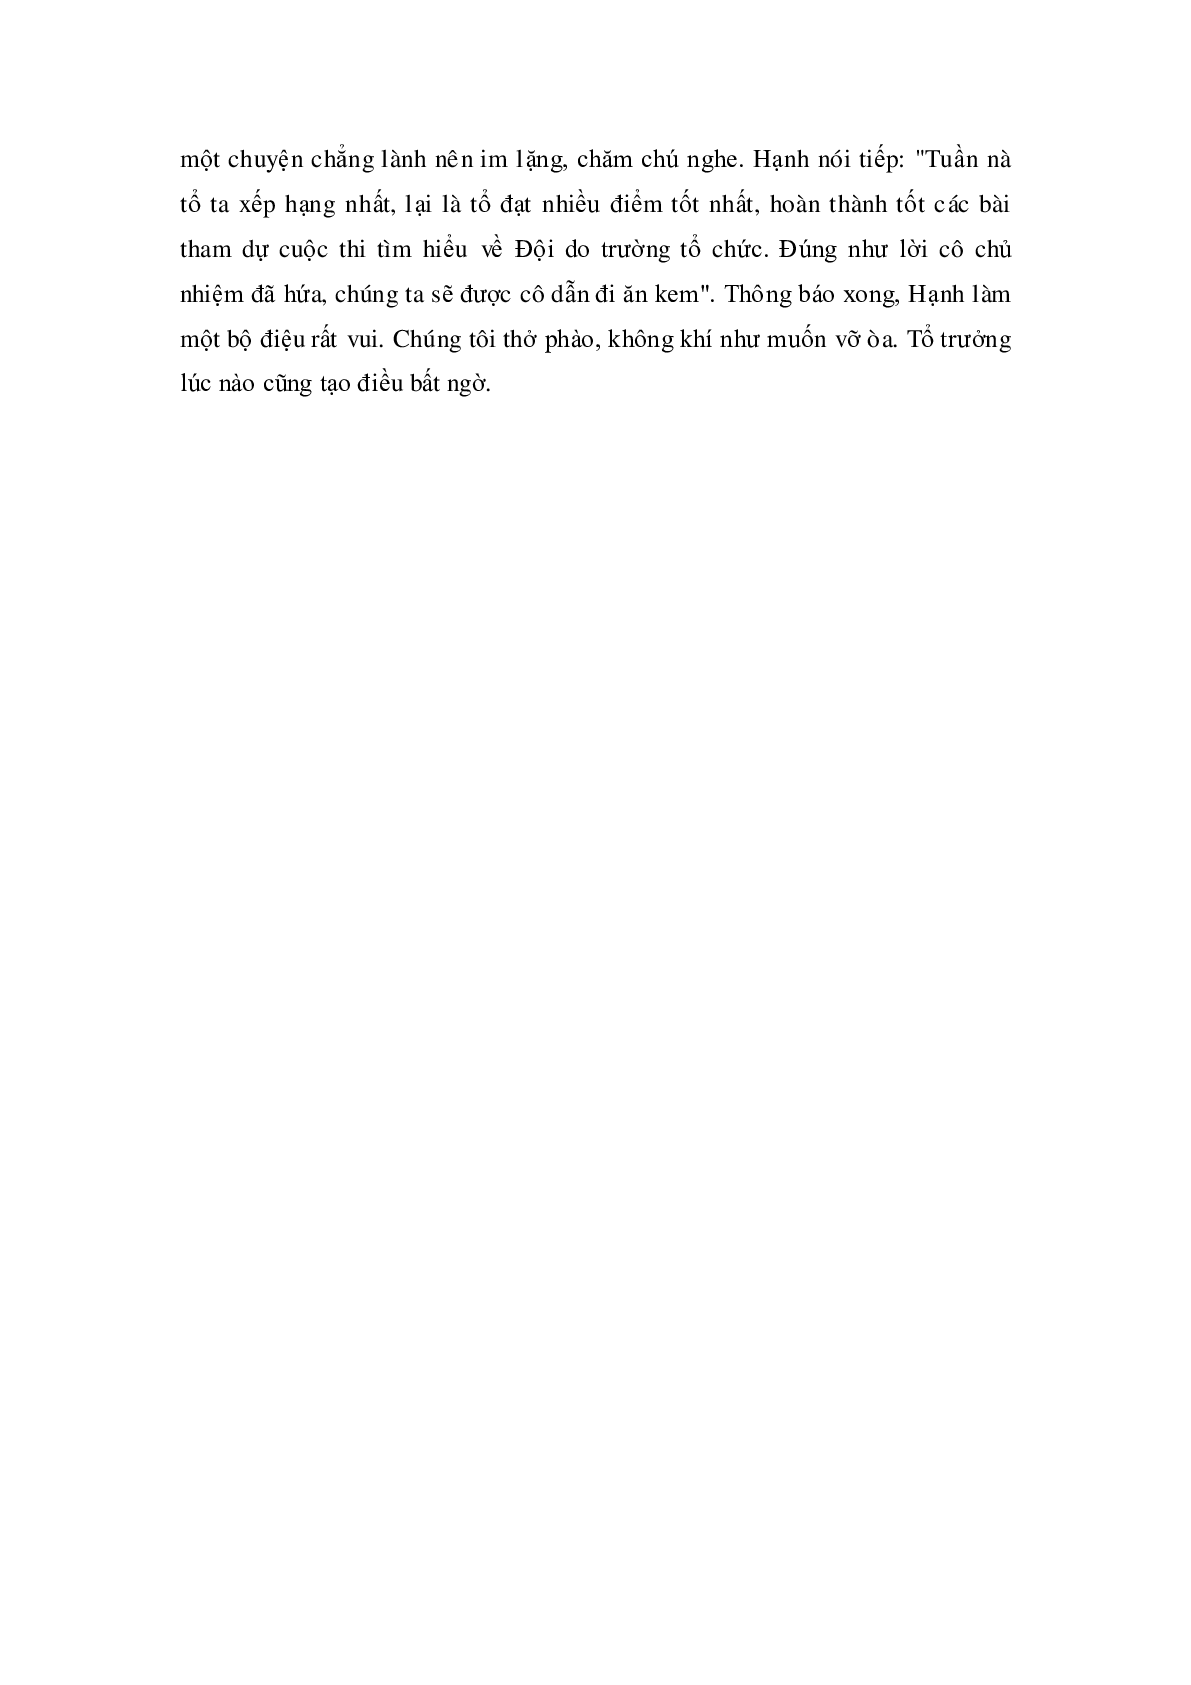 Soạn Tiếng Việt lớp 5: Luyện từ và câu: Ôn tập về dấu câu (Dấu ngoặc kép) mới nhất (trang 2)